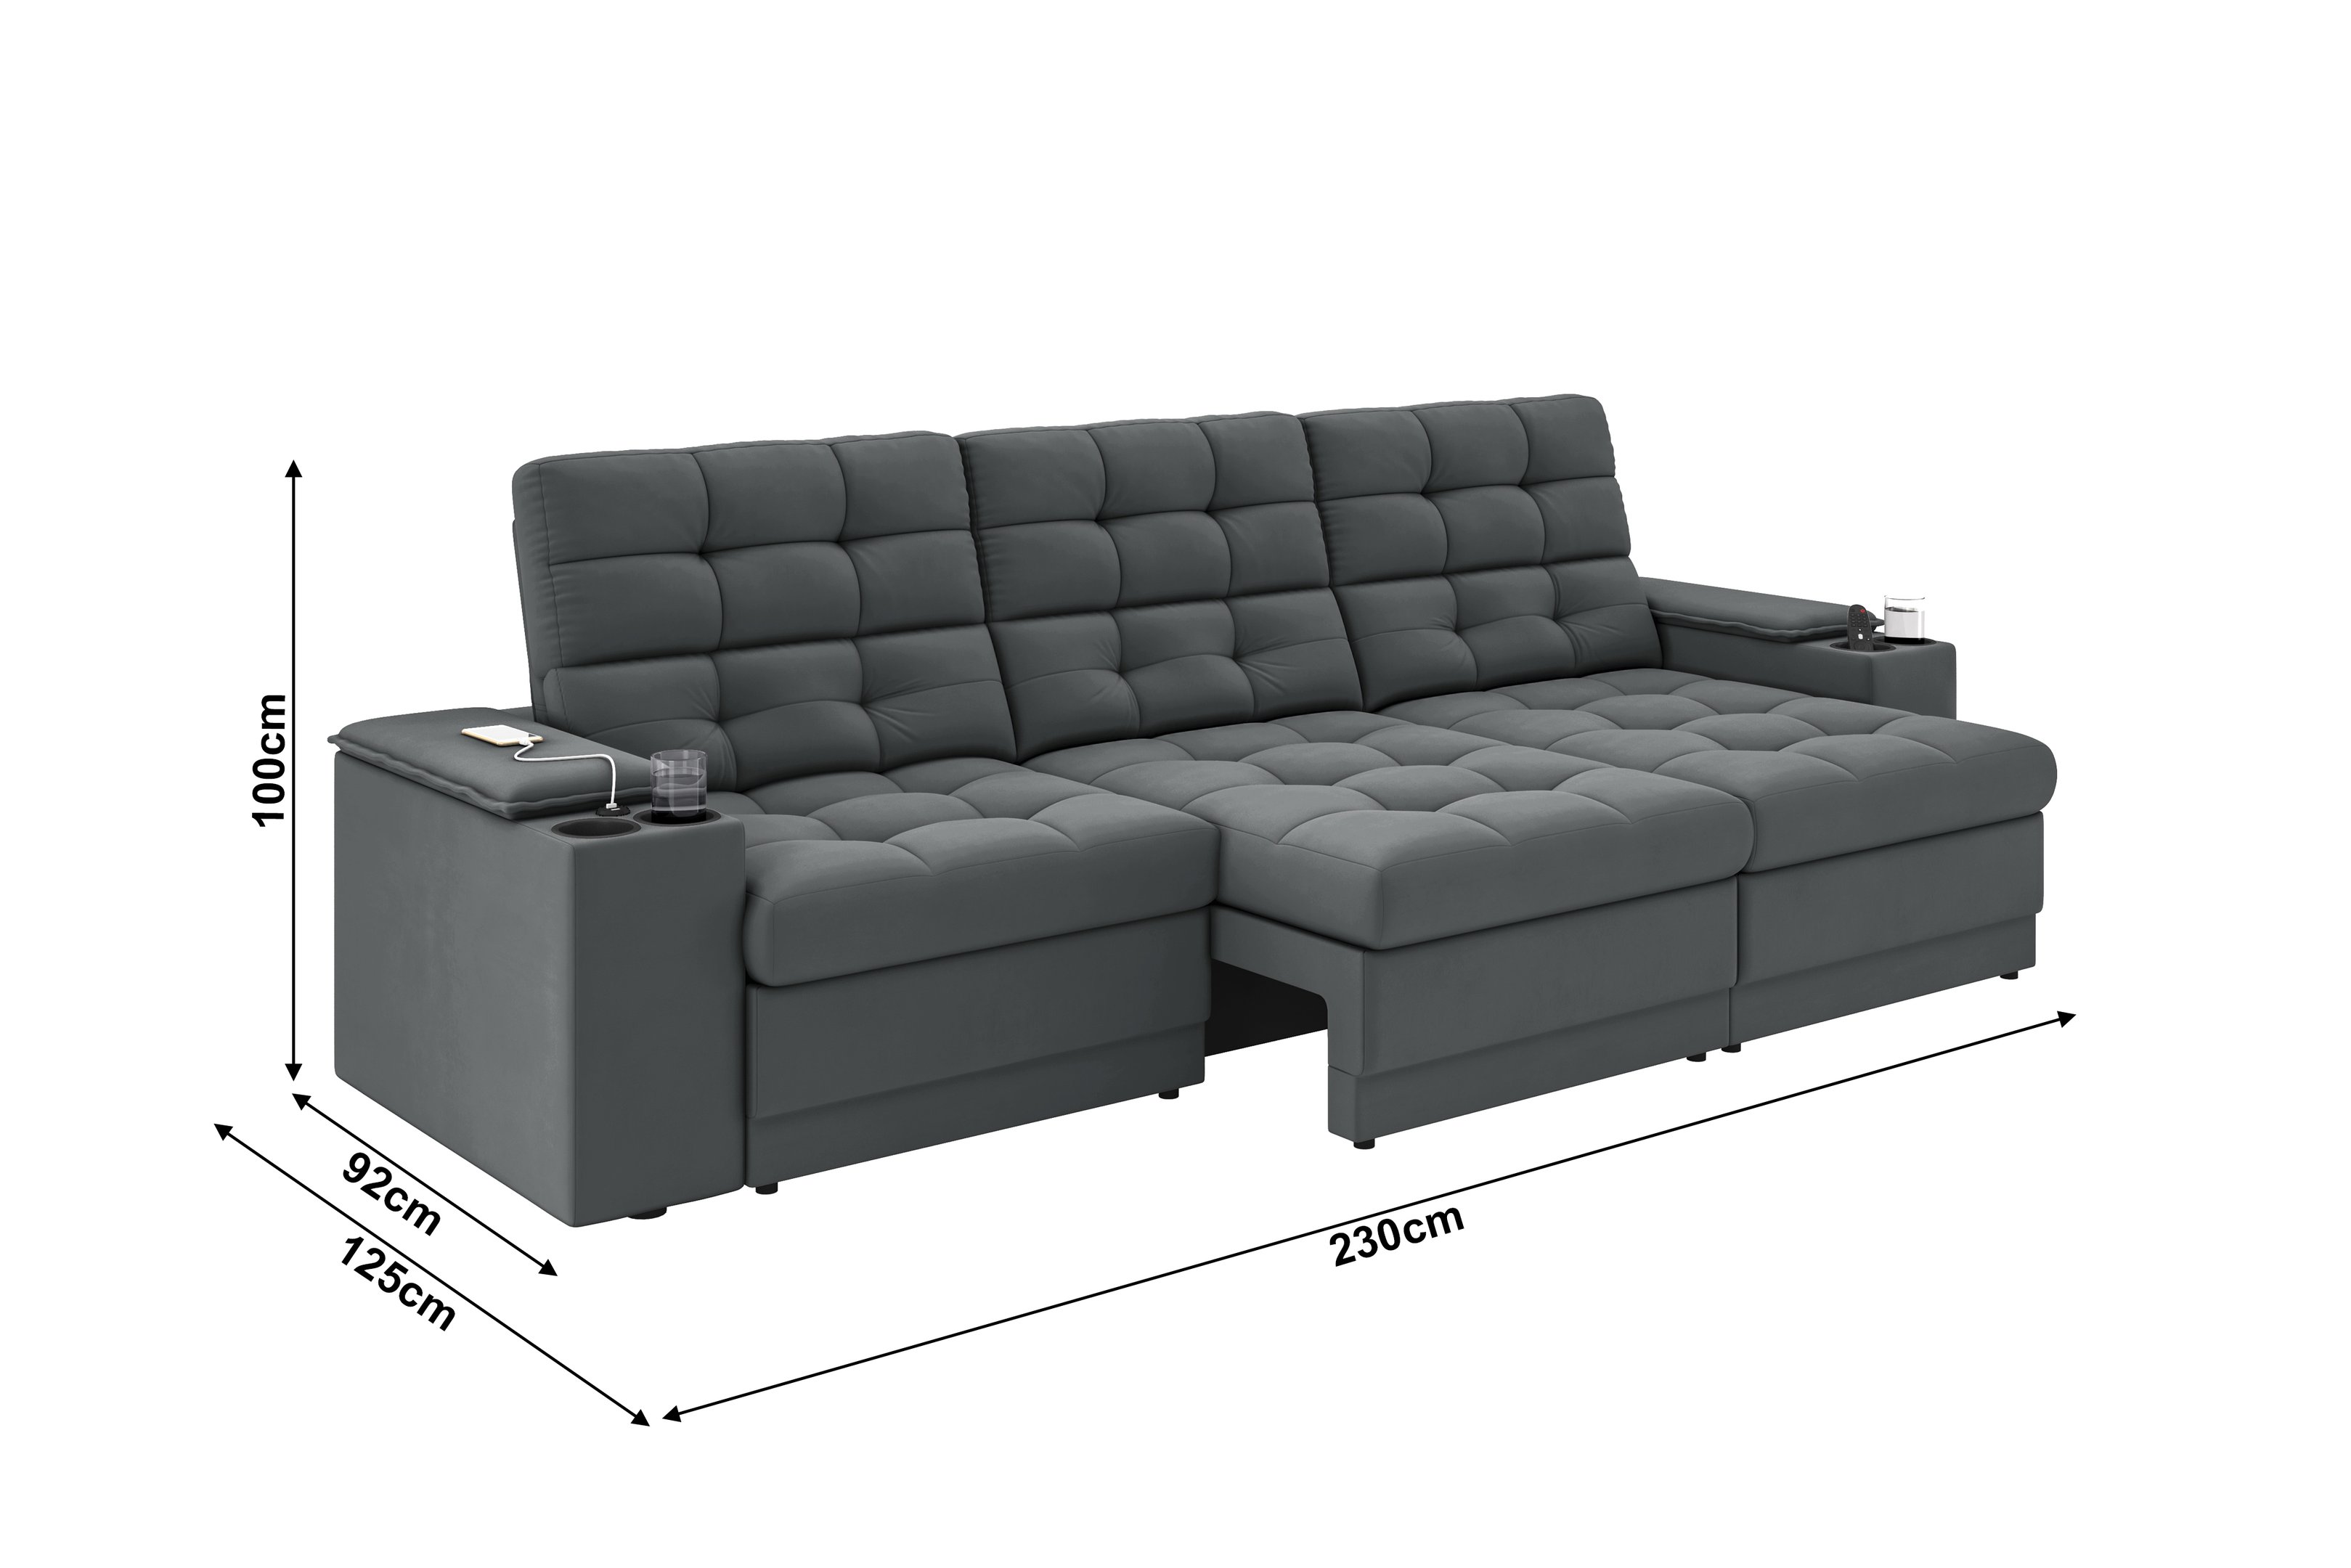 Sofá Confort Premium 2,30m Assento Retrátil/reclinável Porta Copos e Usb Suede Cinza - Xflex - 2